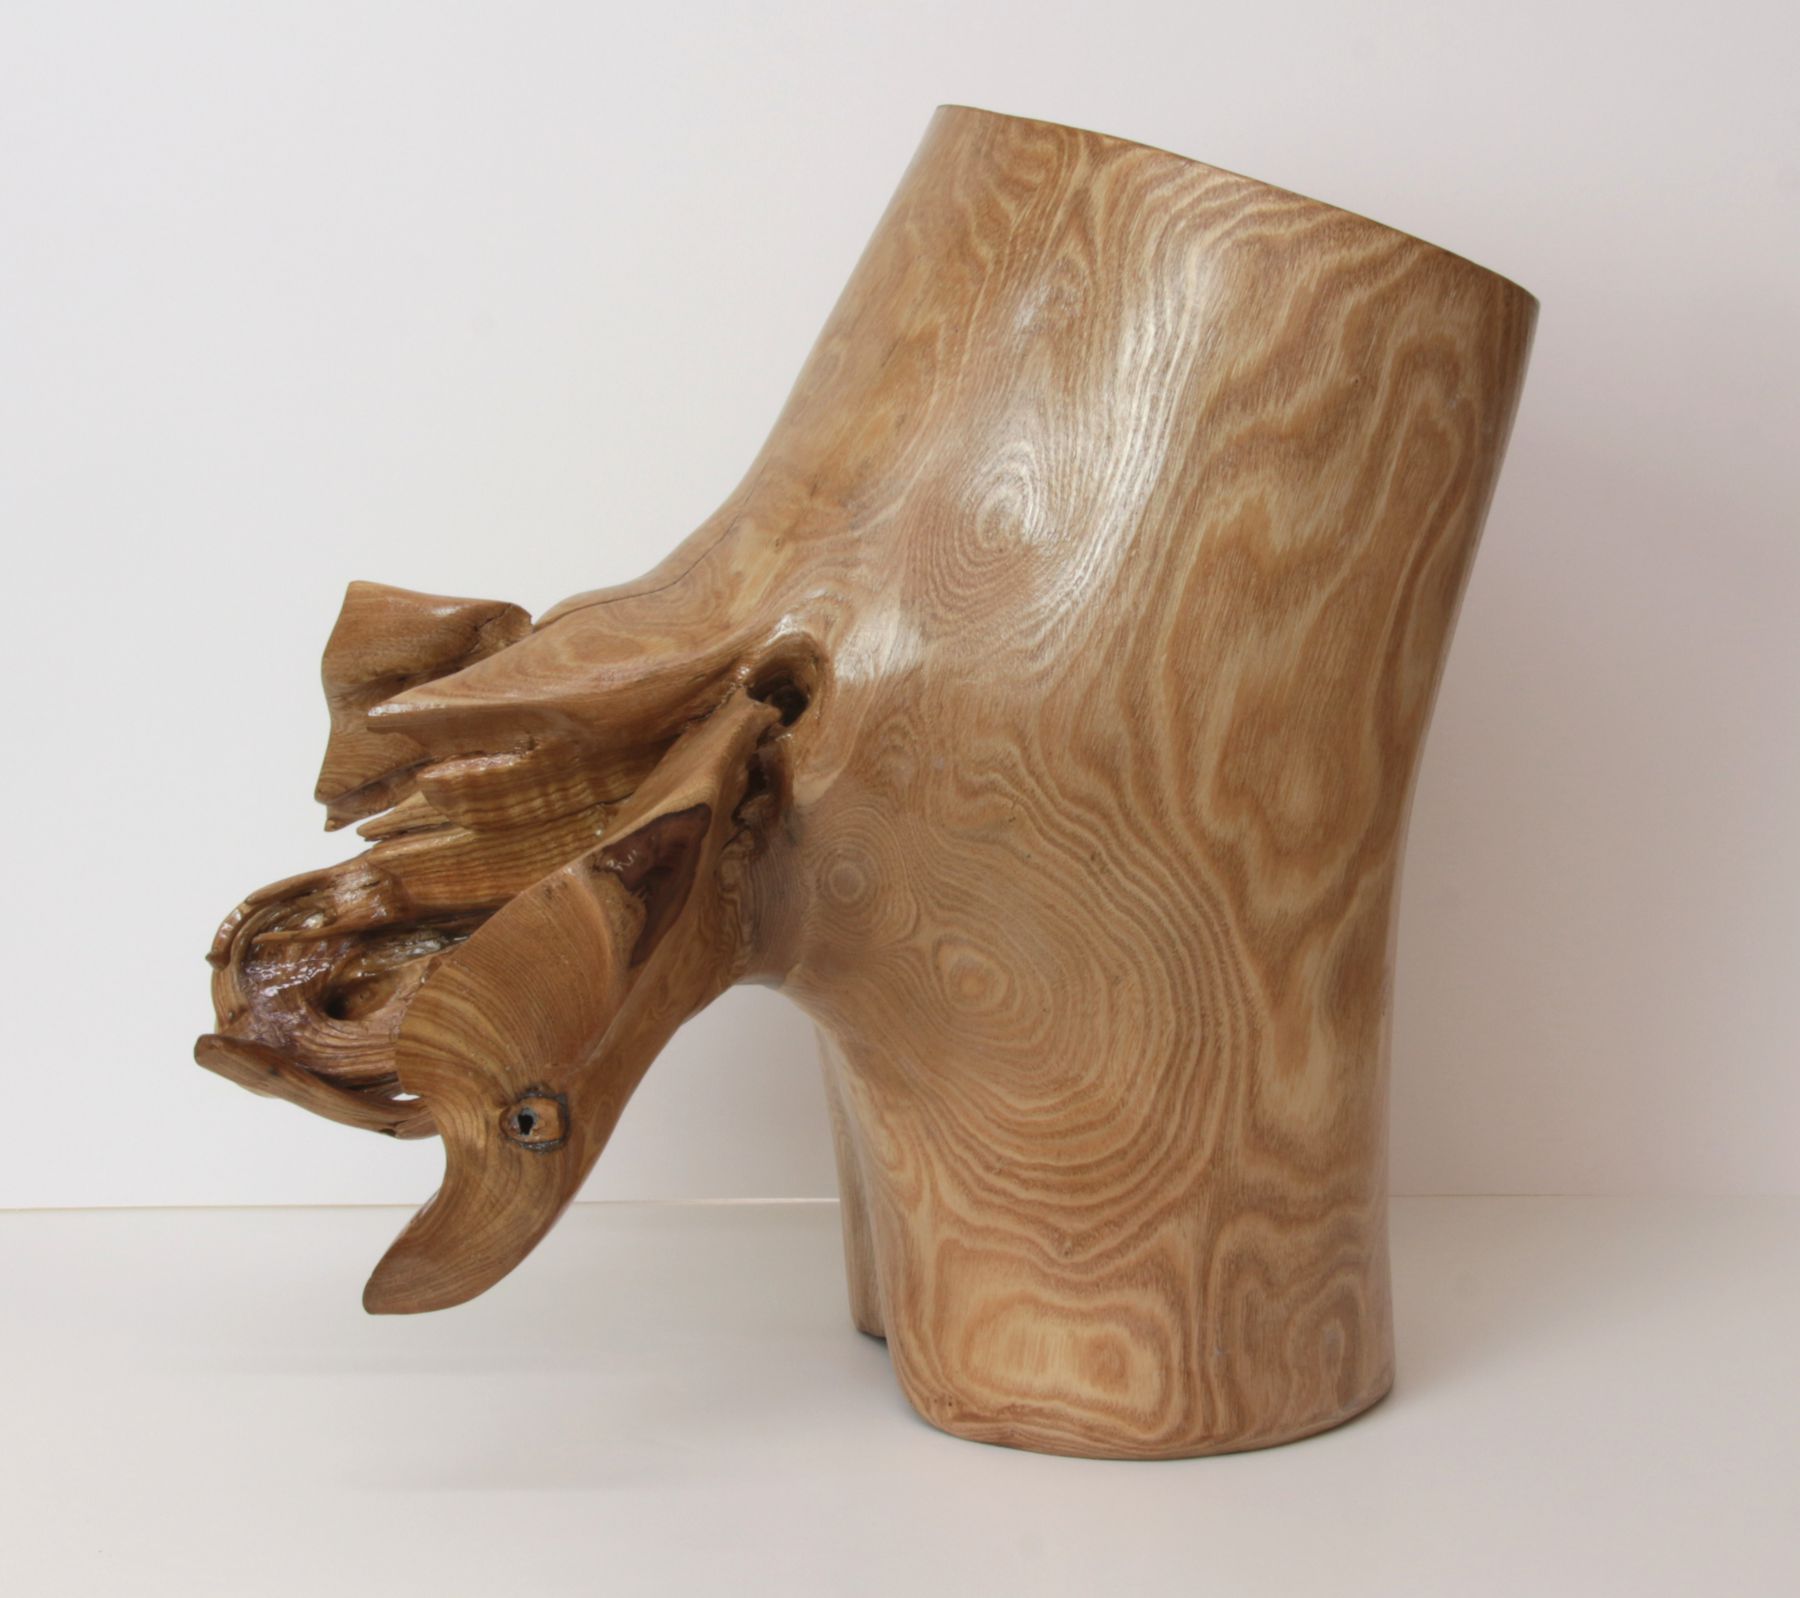    Catalpa Hippo ‑ Melody   Catalpa wood, 17 x 10 x 17 inches 